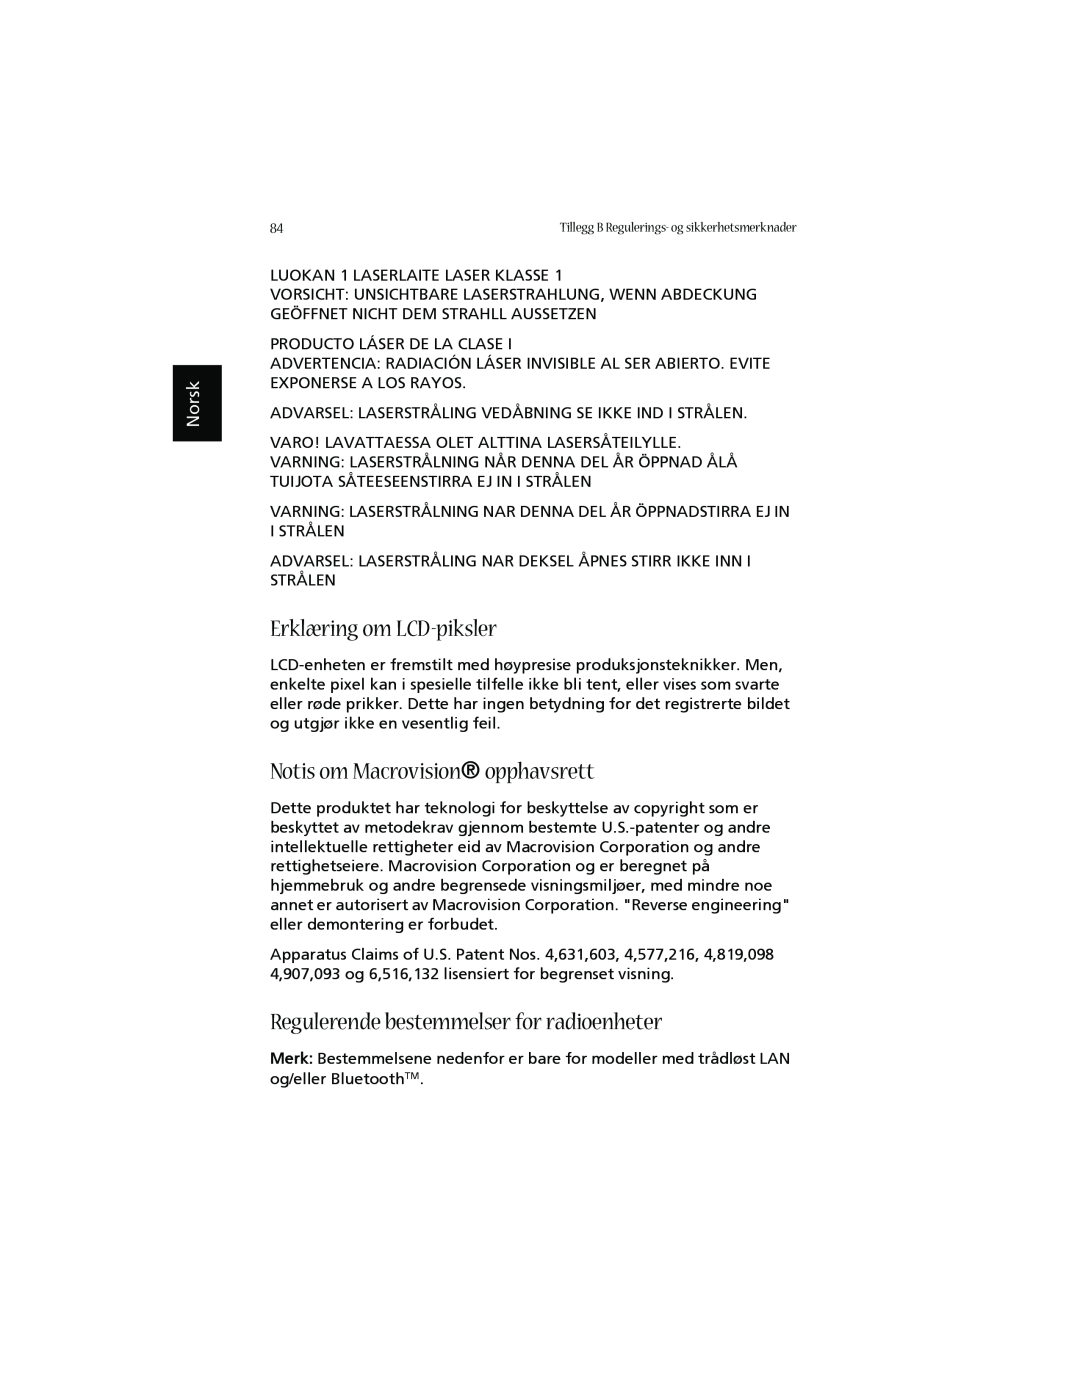 Acer 1660 Erklæring om LCD-piksler, Notis om Macrovision opphavsrett, Regulerende bestemmelser for radioenheter, Norsk 